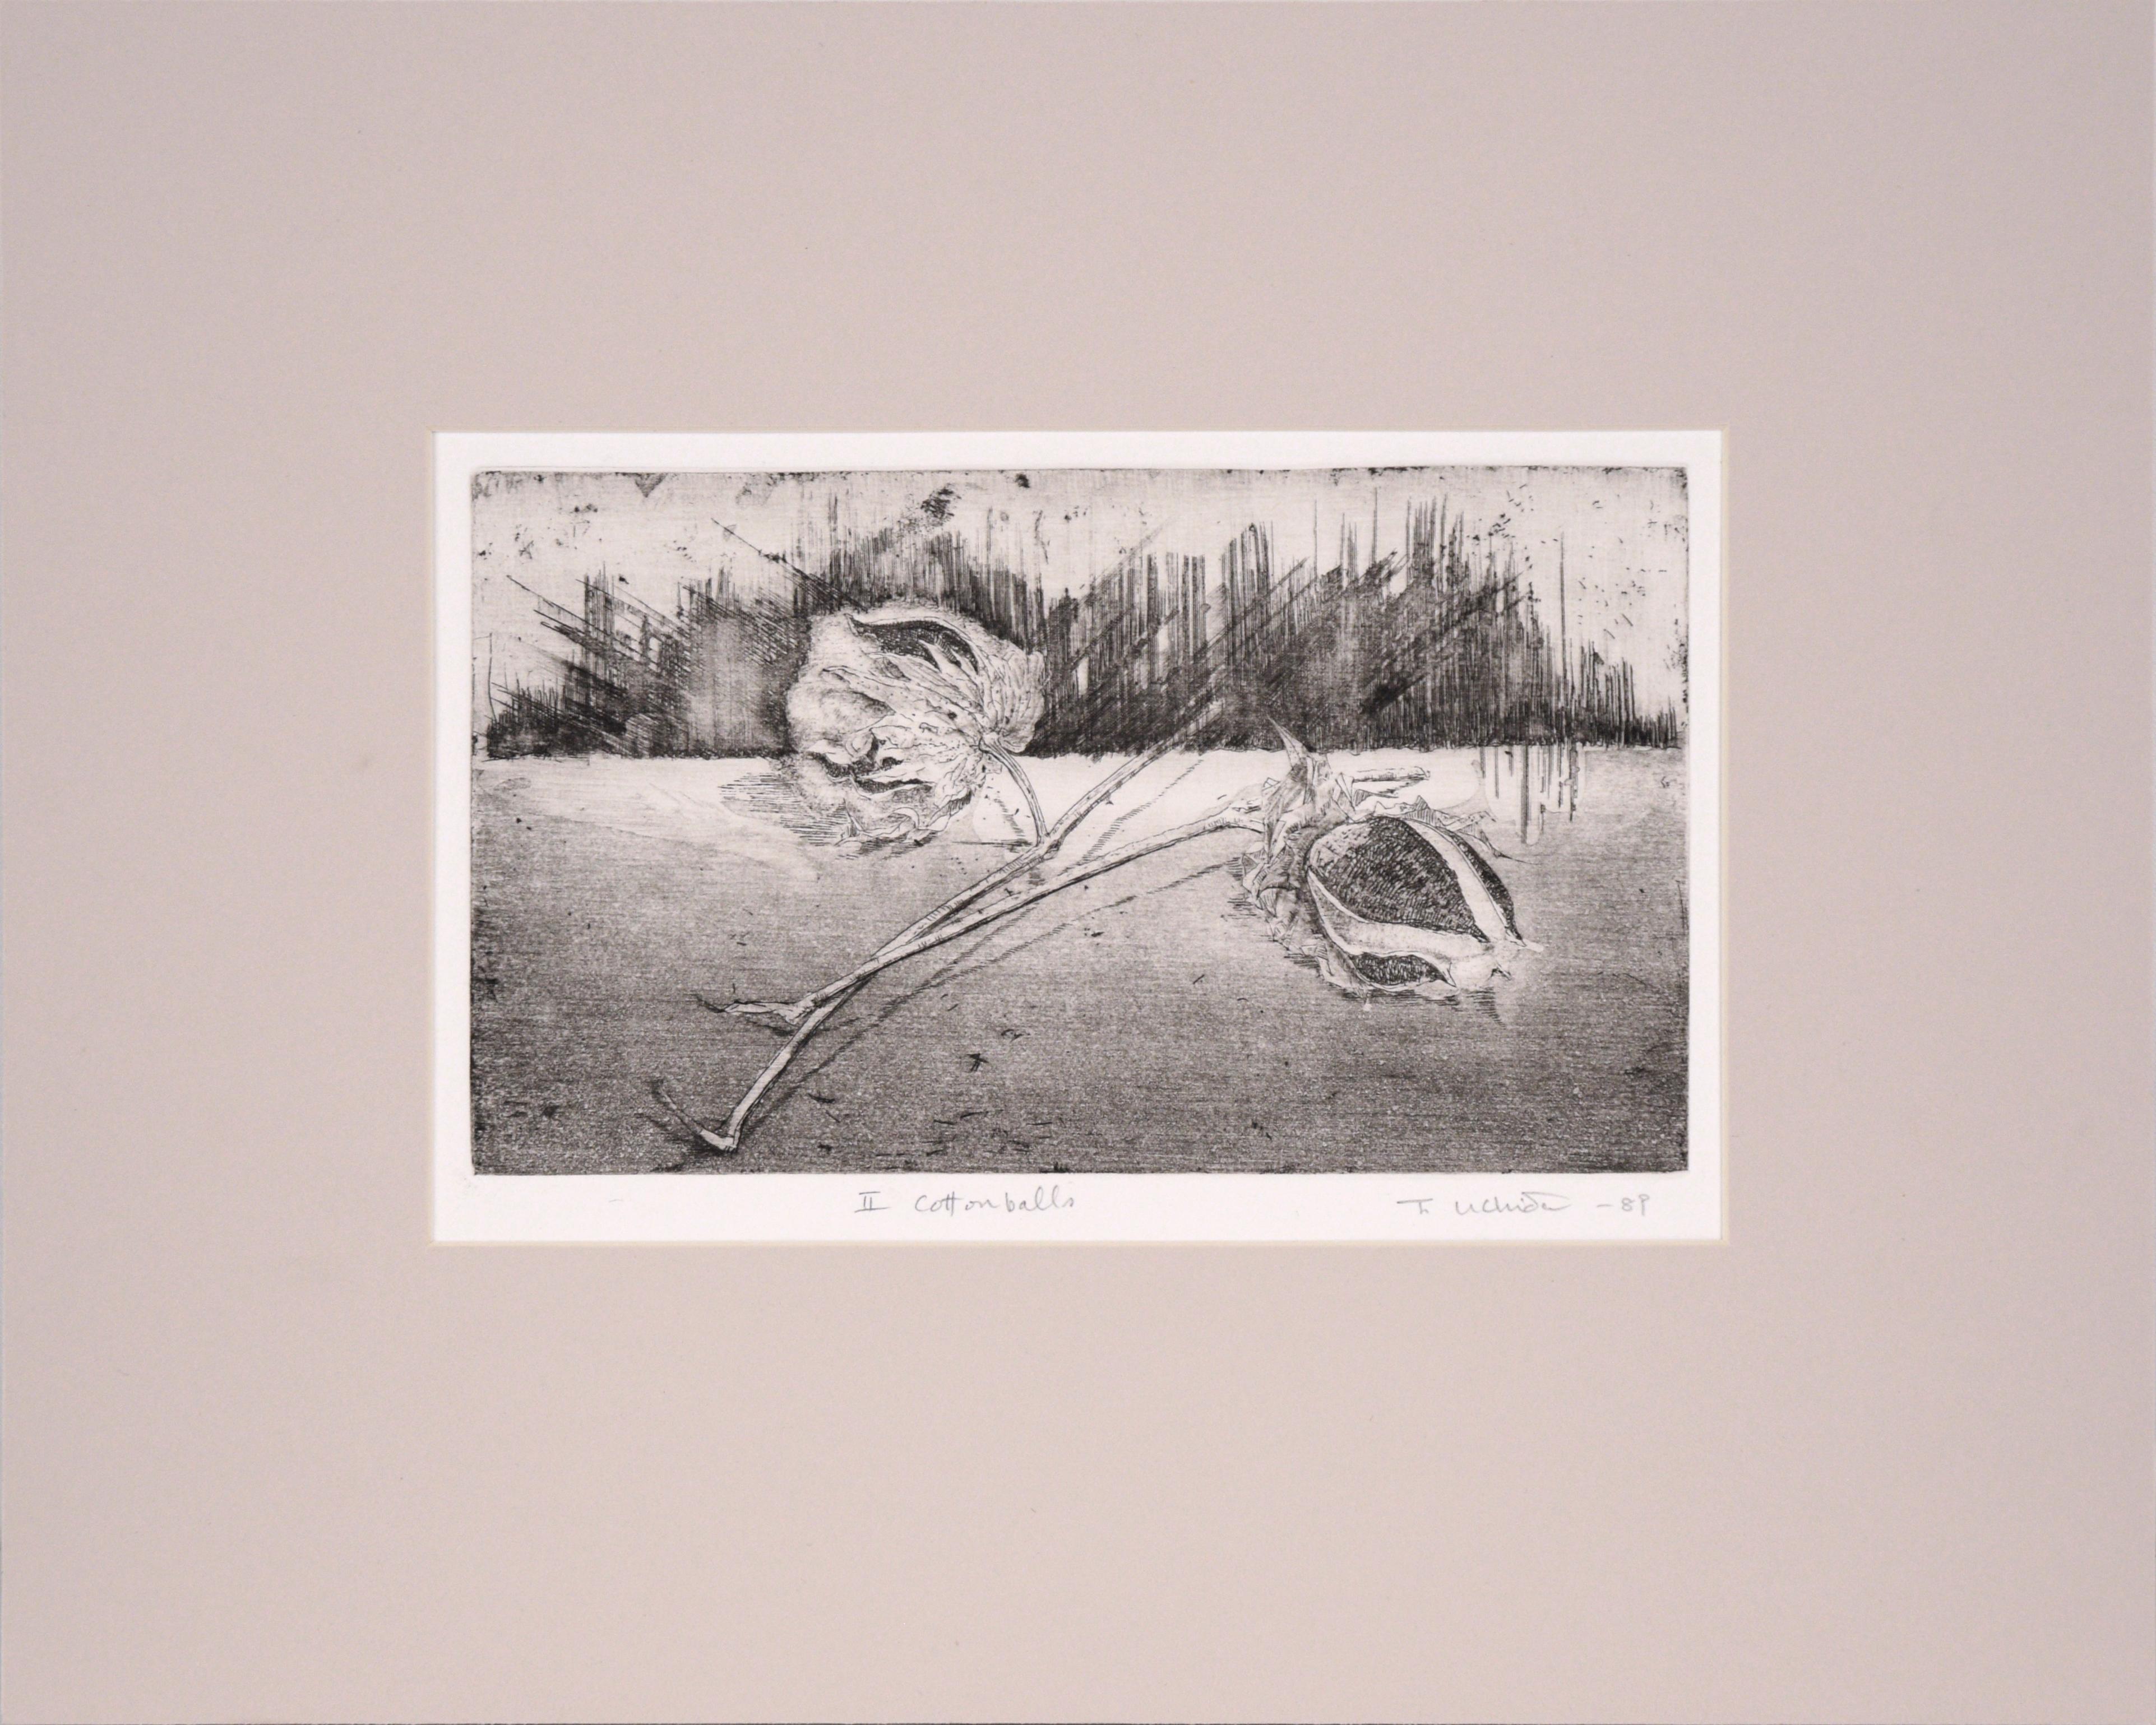 Abstrahierte Kaltnadelradierung von Tomoya Uchida (Japaner, 20. Jahrhundert). Zwei Wattebällchen am Stiel sitzen in einem minimalistischen Raum.

Am unteren Rand mit "II Cottonballs" betitelt.
Signiert und datiert "T. Uchida - 89" in der rechten